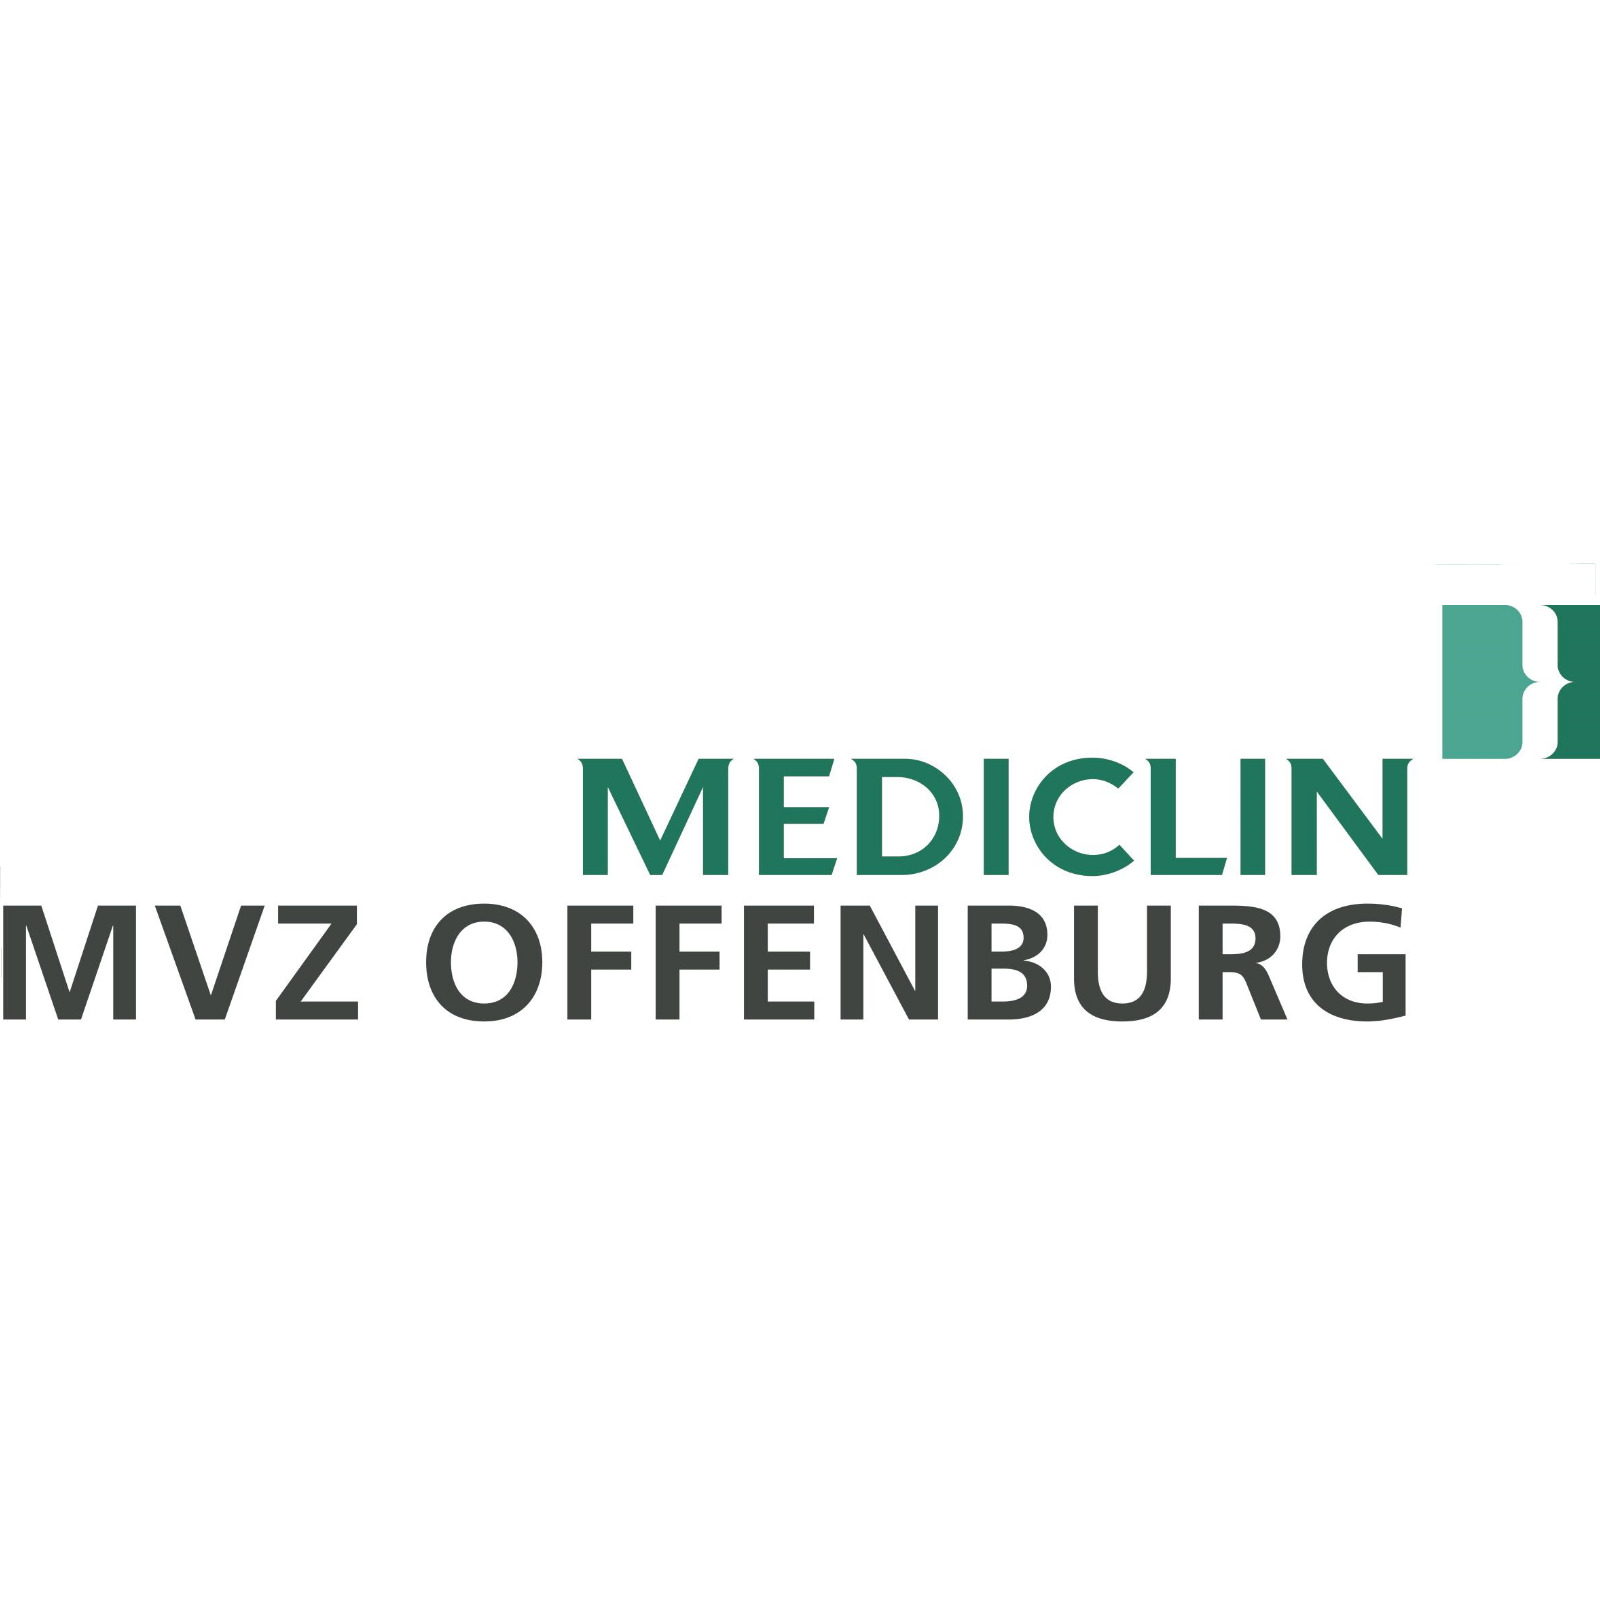 MEDICLIN MVZ Offenburg, Okenstraße 27